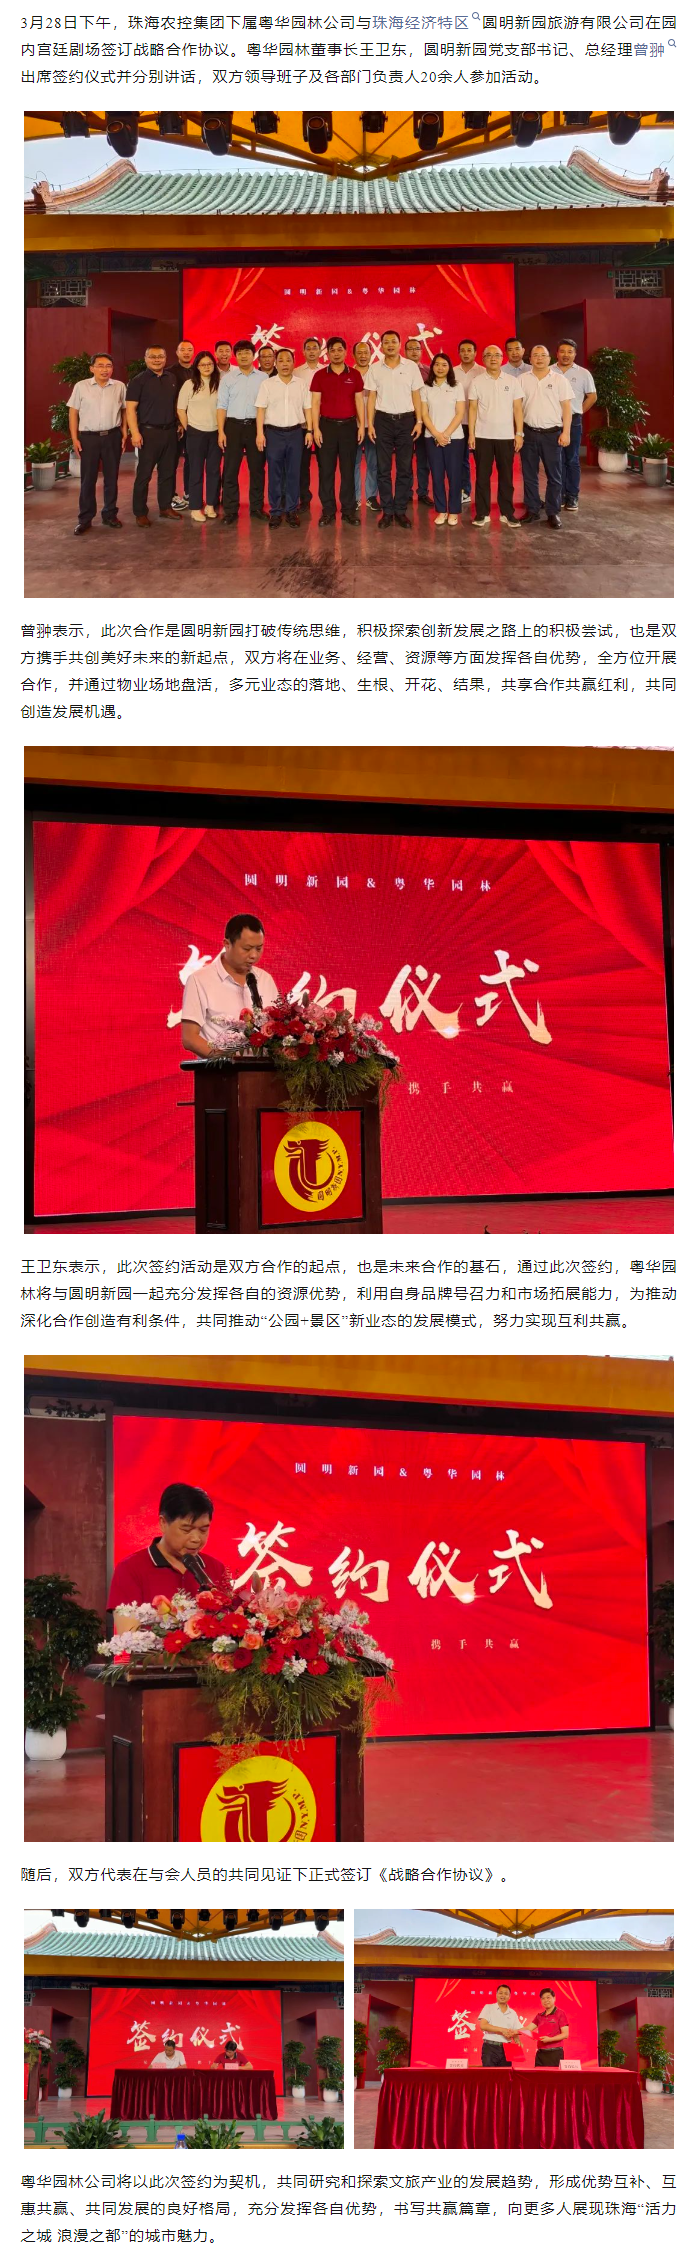 珠海农控集团下属粤华园林公司与圆明新园签订战略合作协议.png